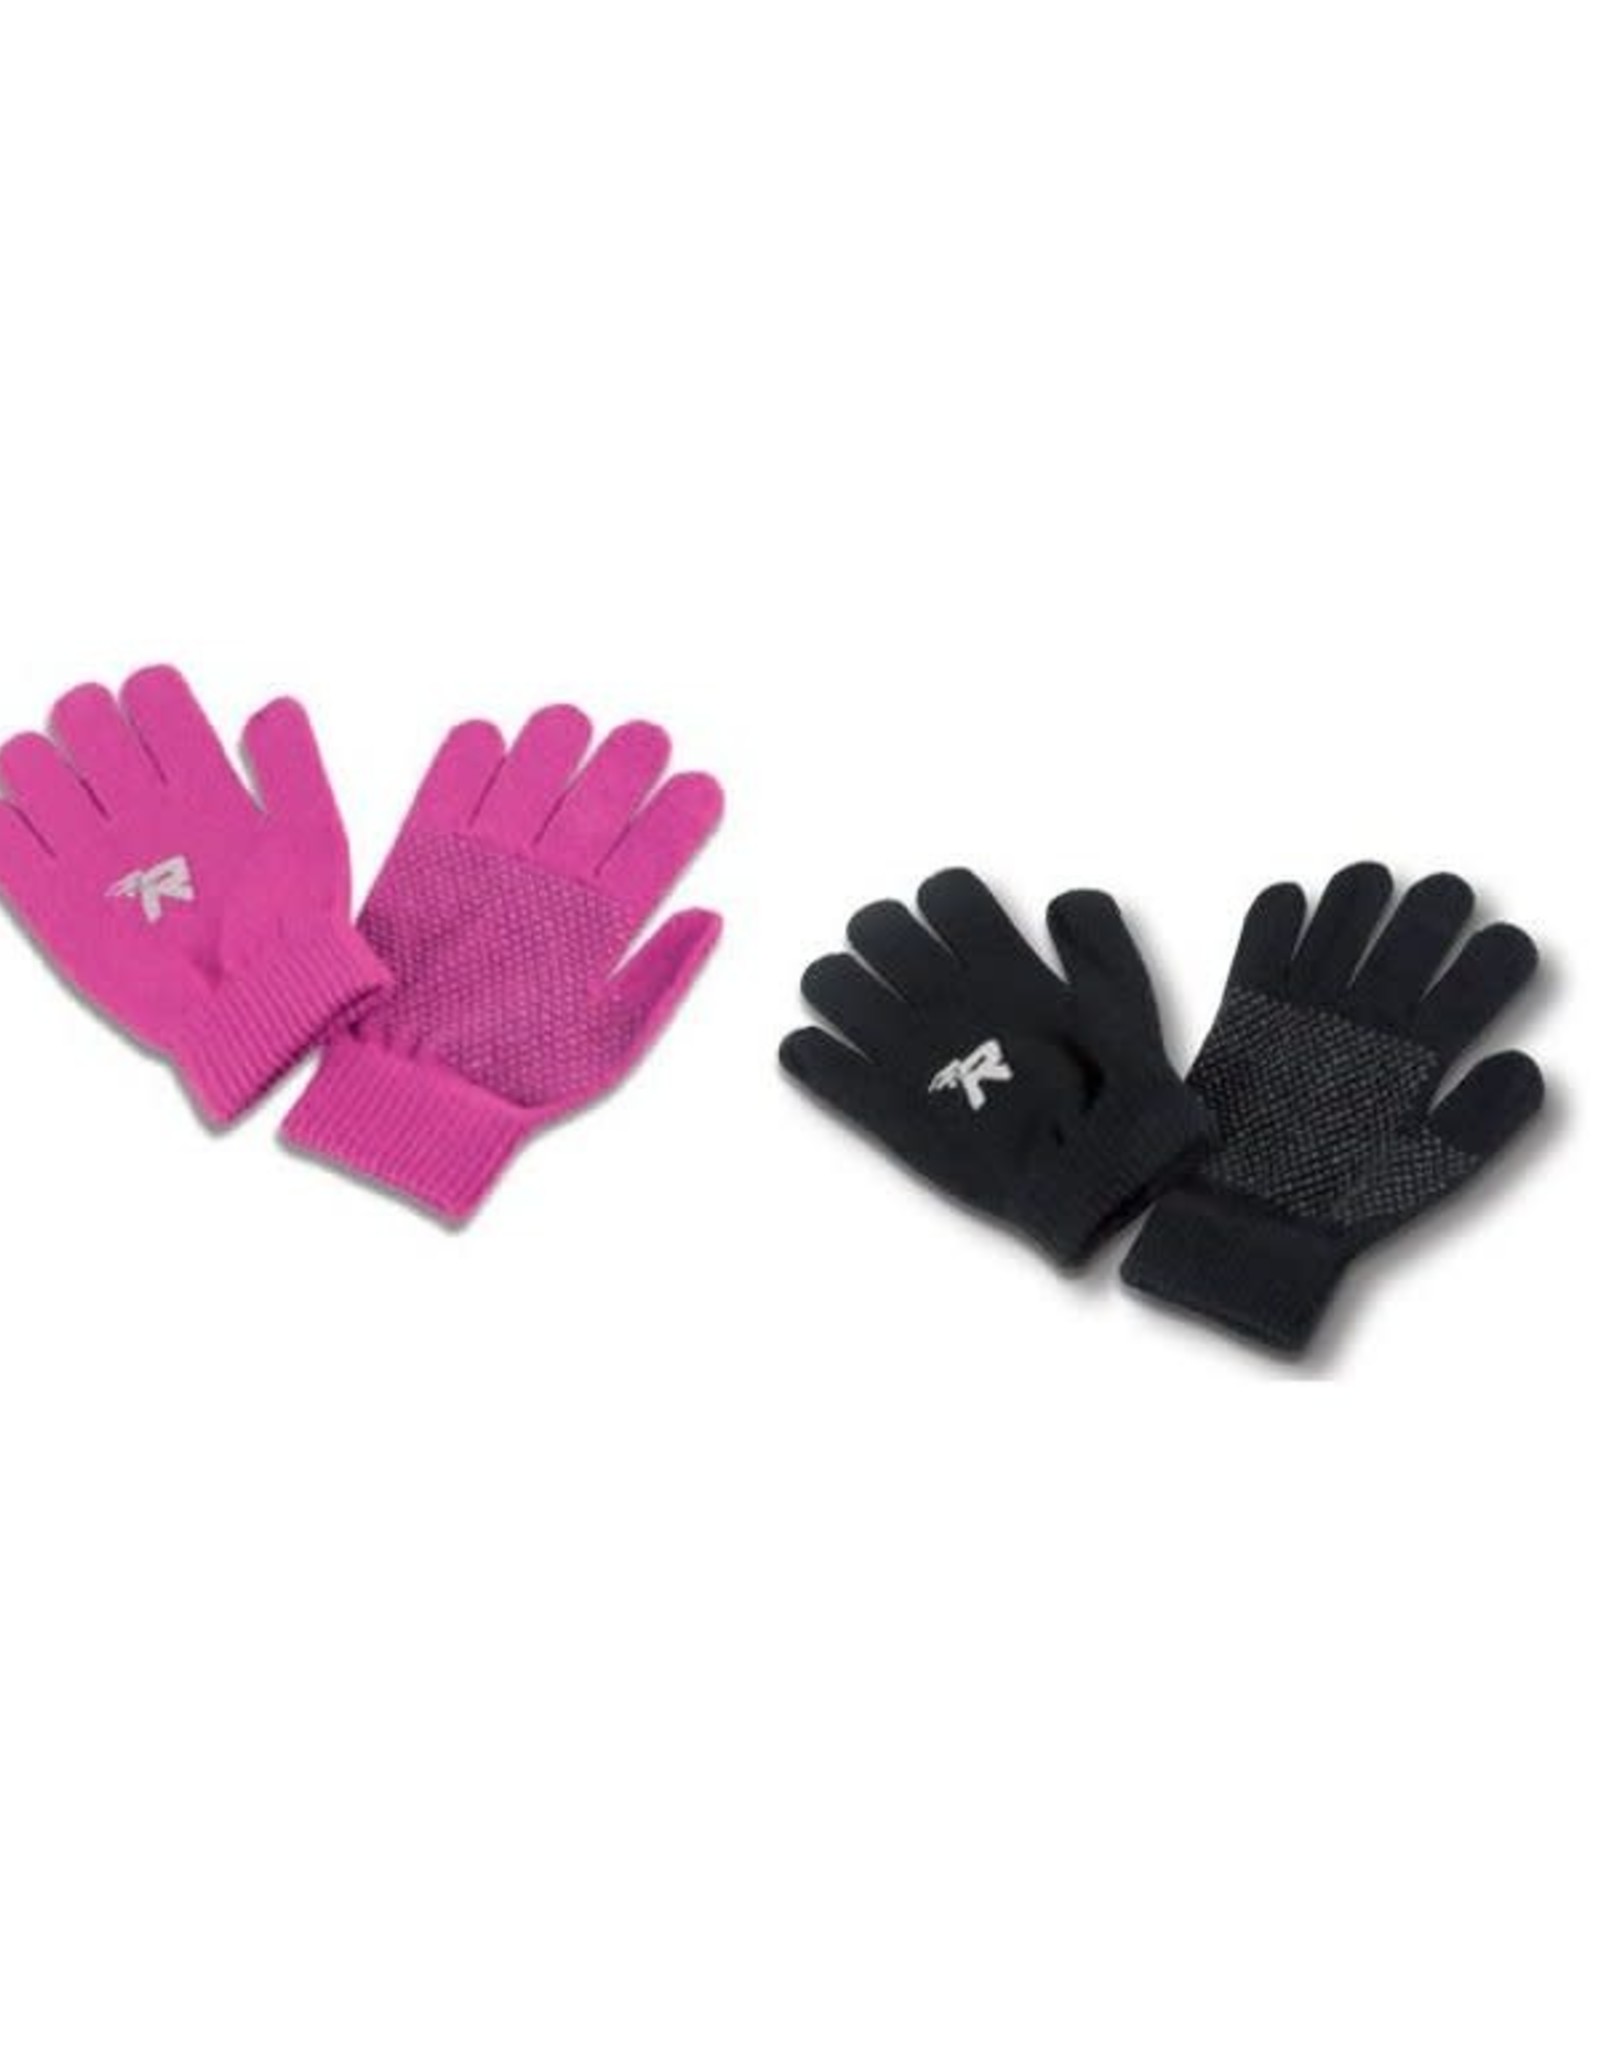 Risport Gloves